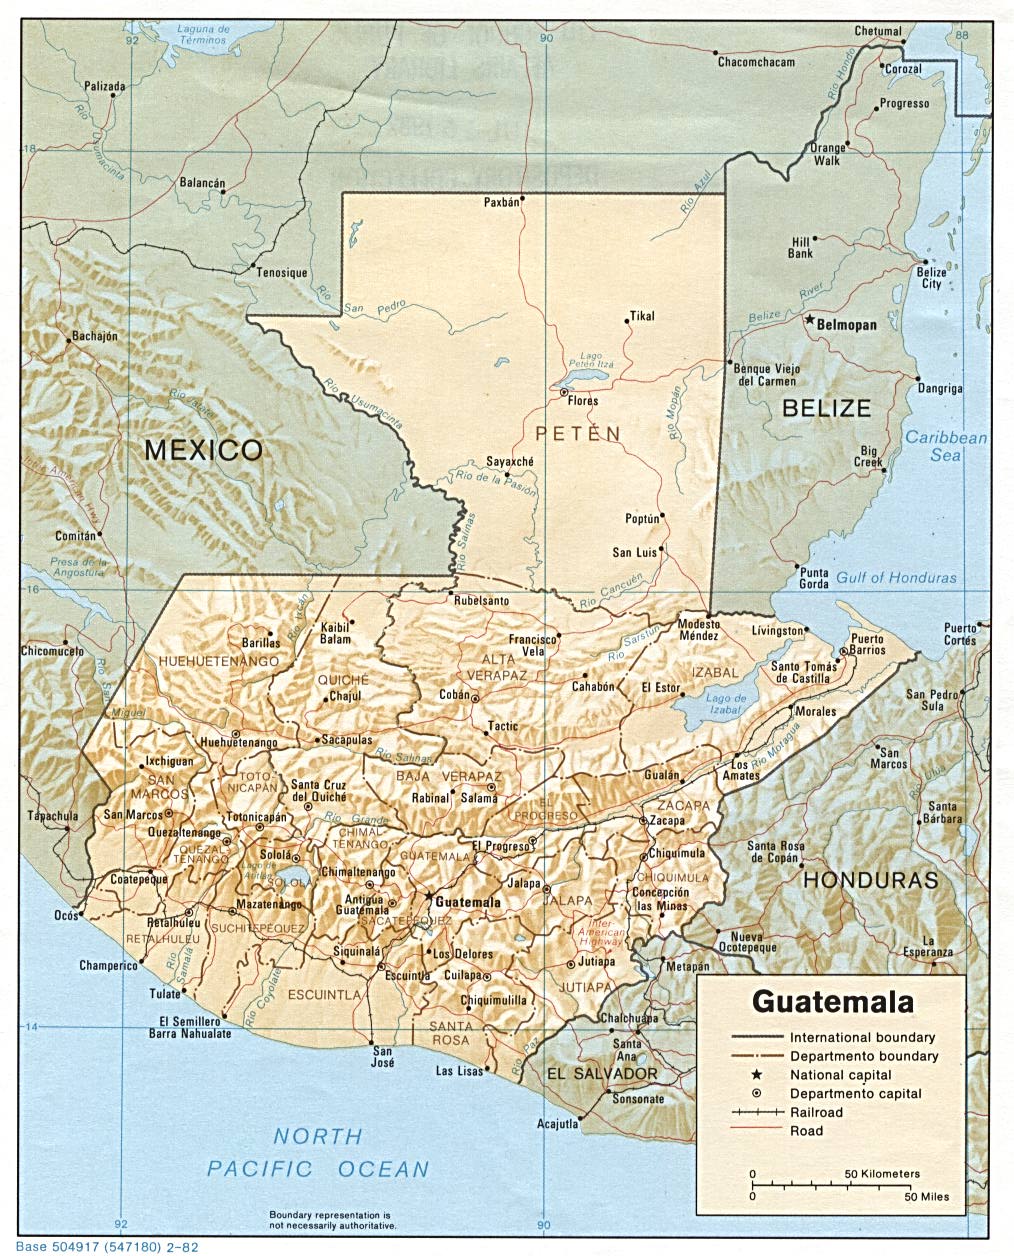 MAP OF GUATEMALA